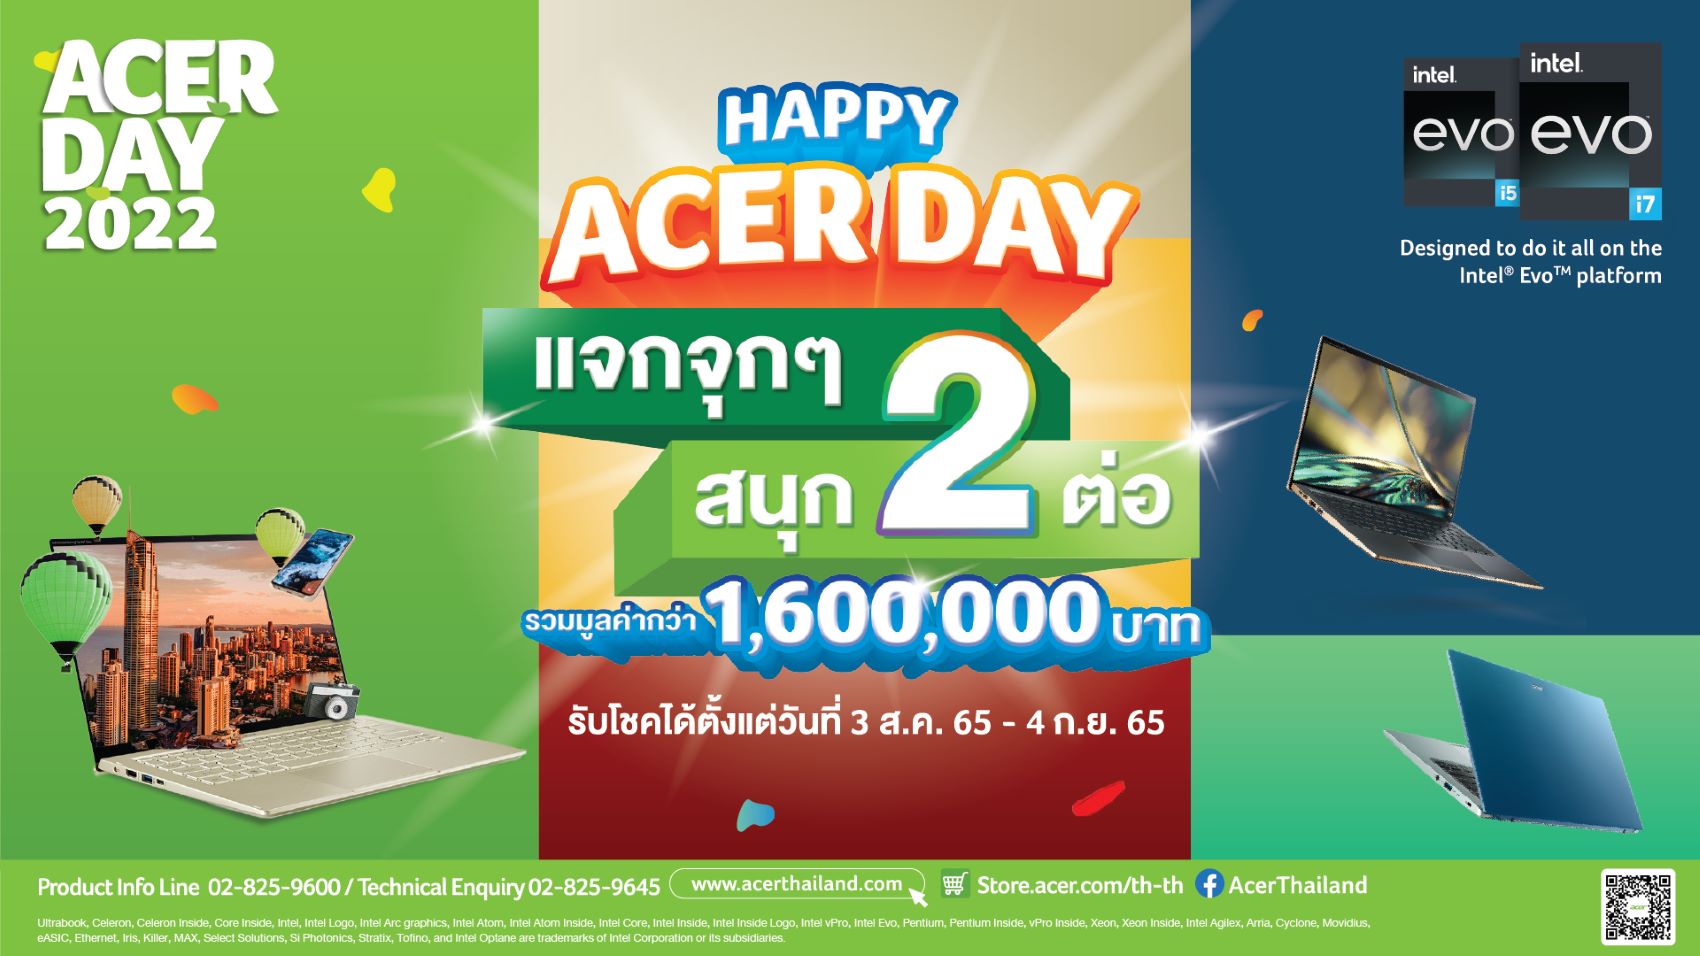 Acer Day 2022 แคมเปญประจำปีระดับภูมิภาคเอเชียแปซิฟิก ‘ย้ำ’ ความมุ่งมั่นเพื่อความยั่งยืนภายใต้ธีม ‘Make Your Green Mark’ ร่วมสร้างกรีนมาร์คกับ 18 ตัวแทน Acer Day Ambassadors จากทั่วภูมิภาค